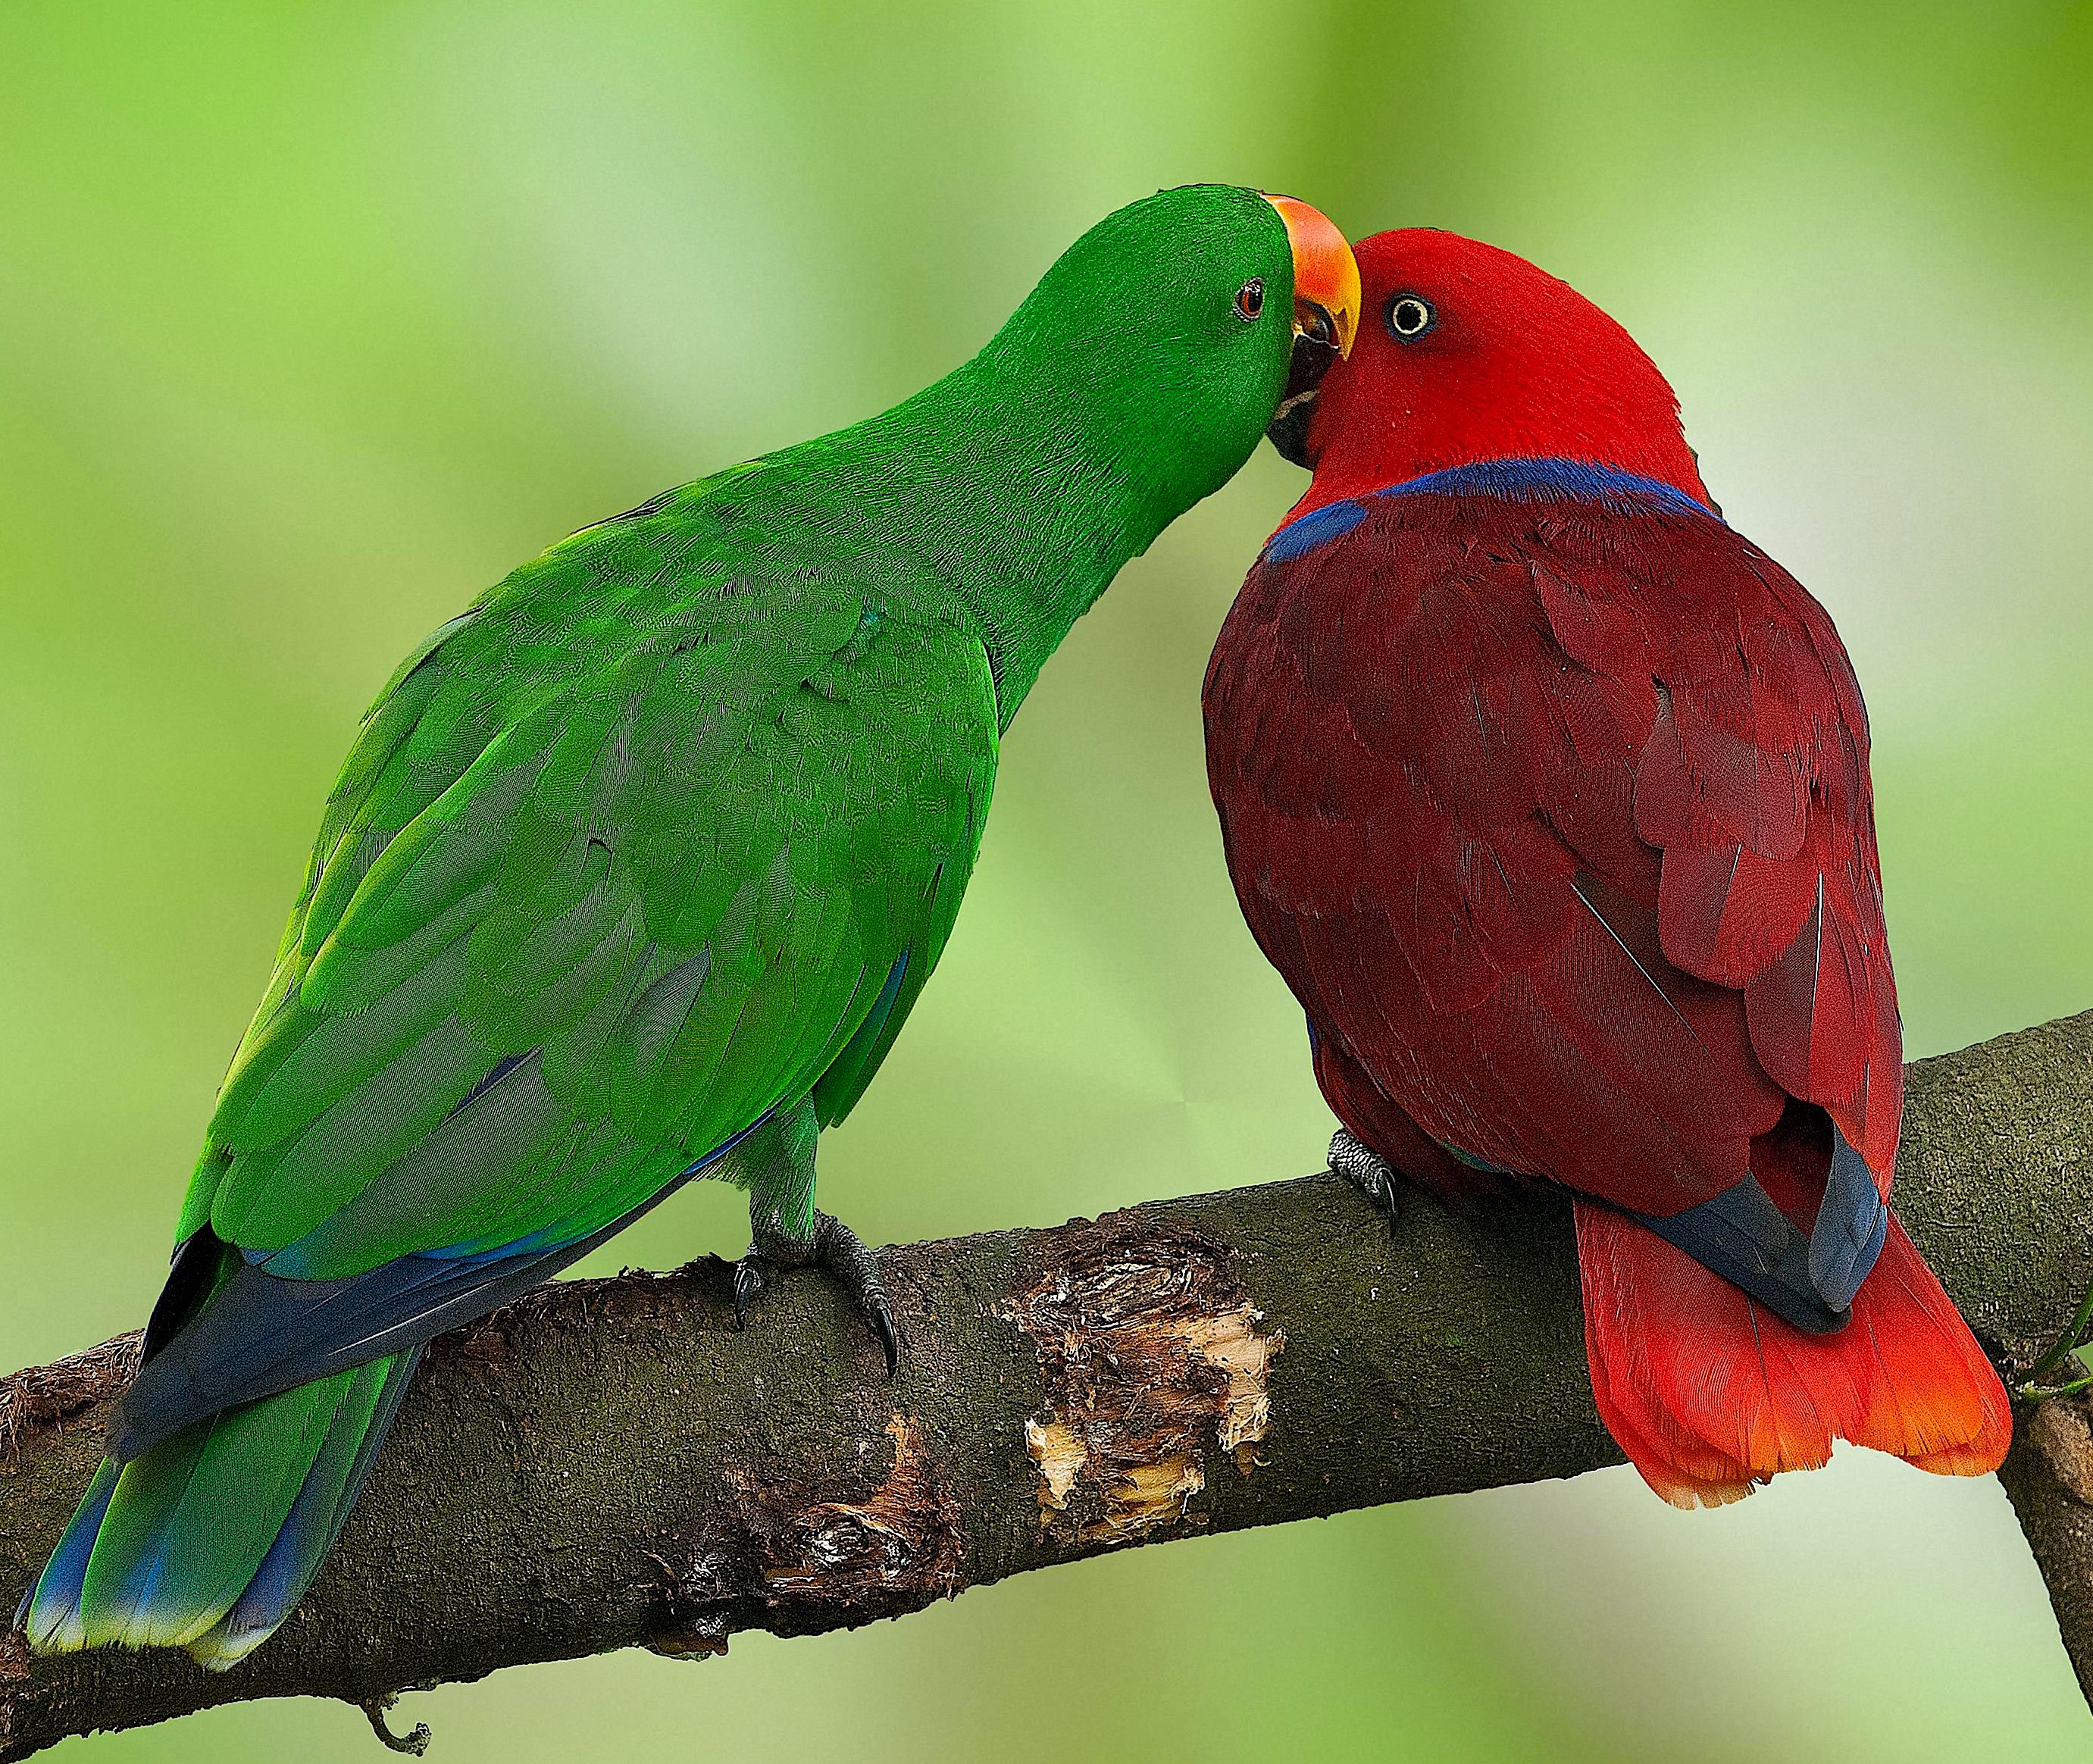 Благородный зелёно-красный попугай : фото, видео, содержание и размножение